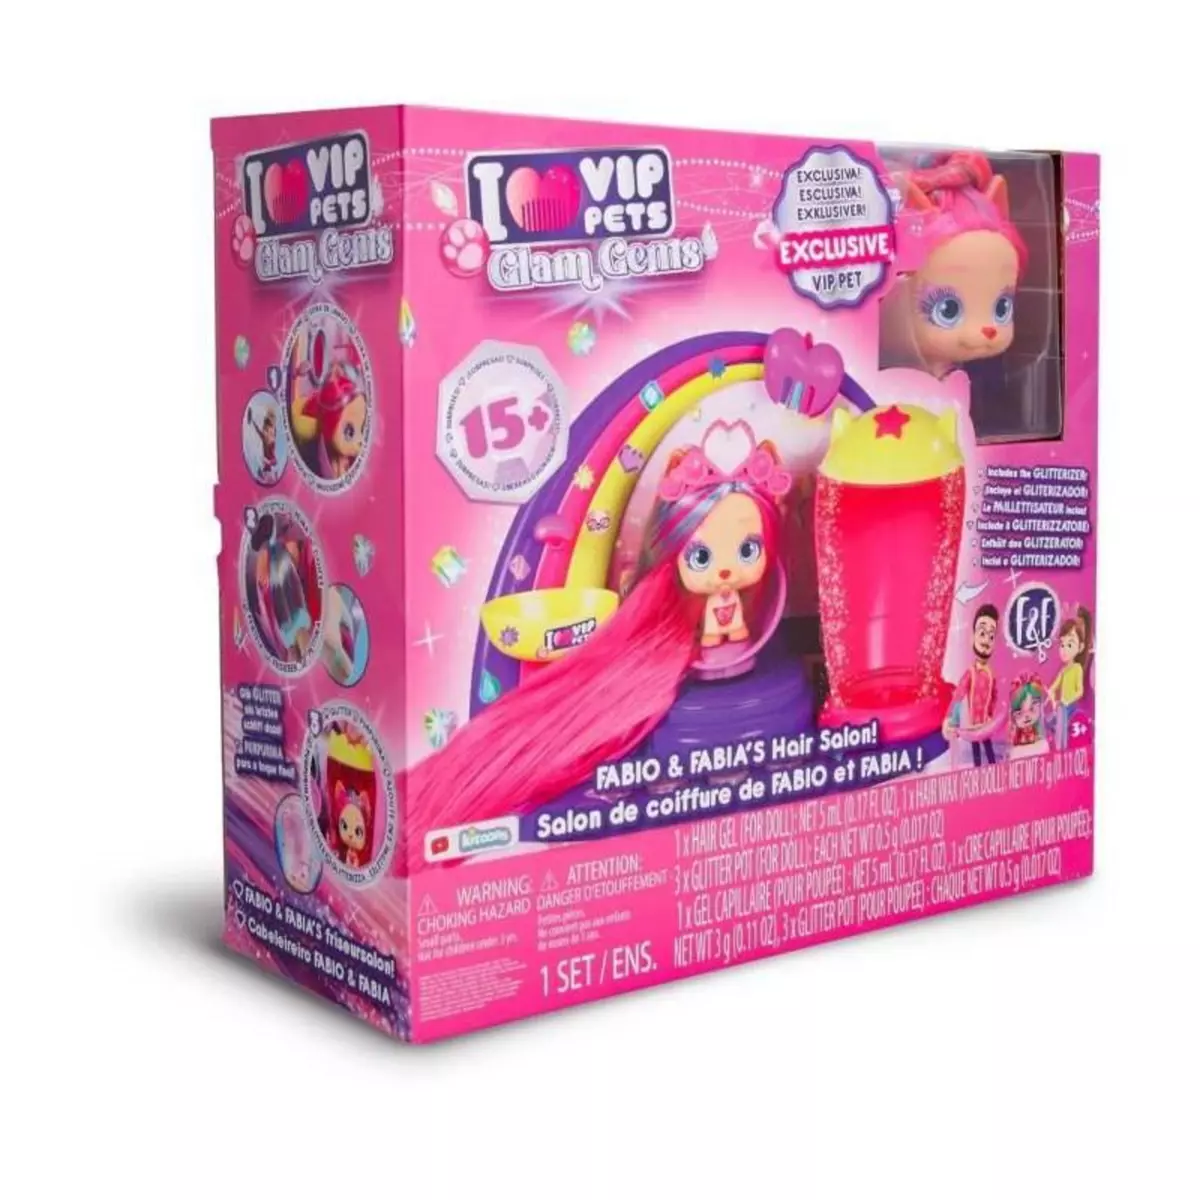 IMC Toys Salon de coifure Vip pets Glam Gems Fabio & Fabia - A partir de 3 ans